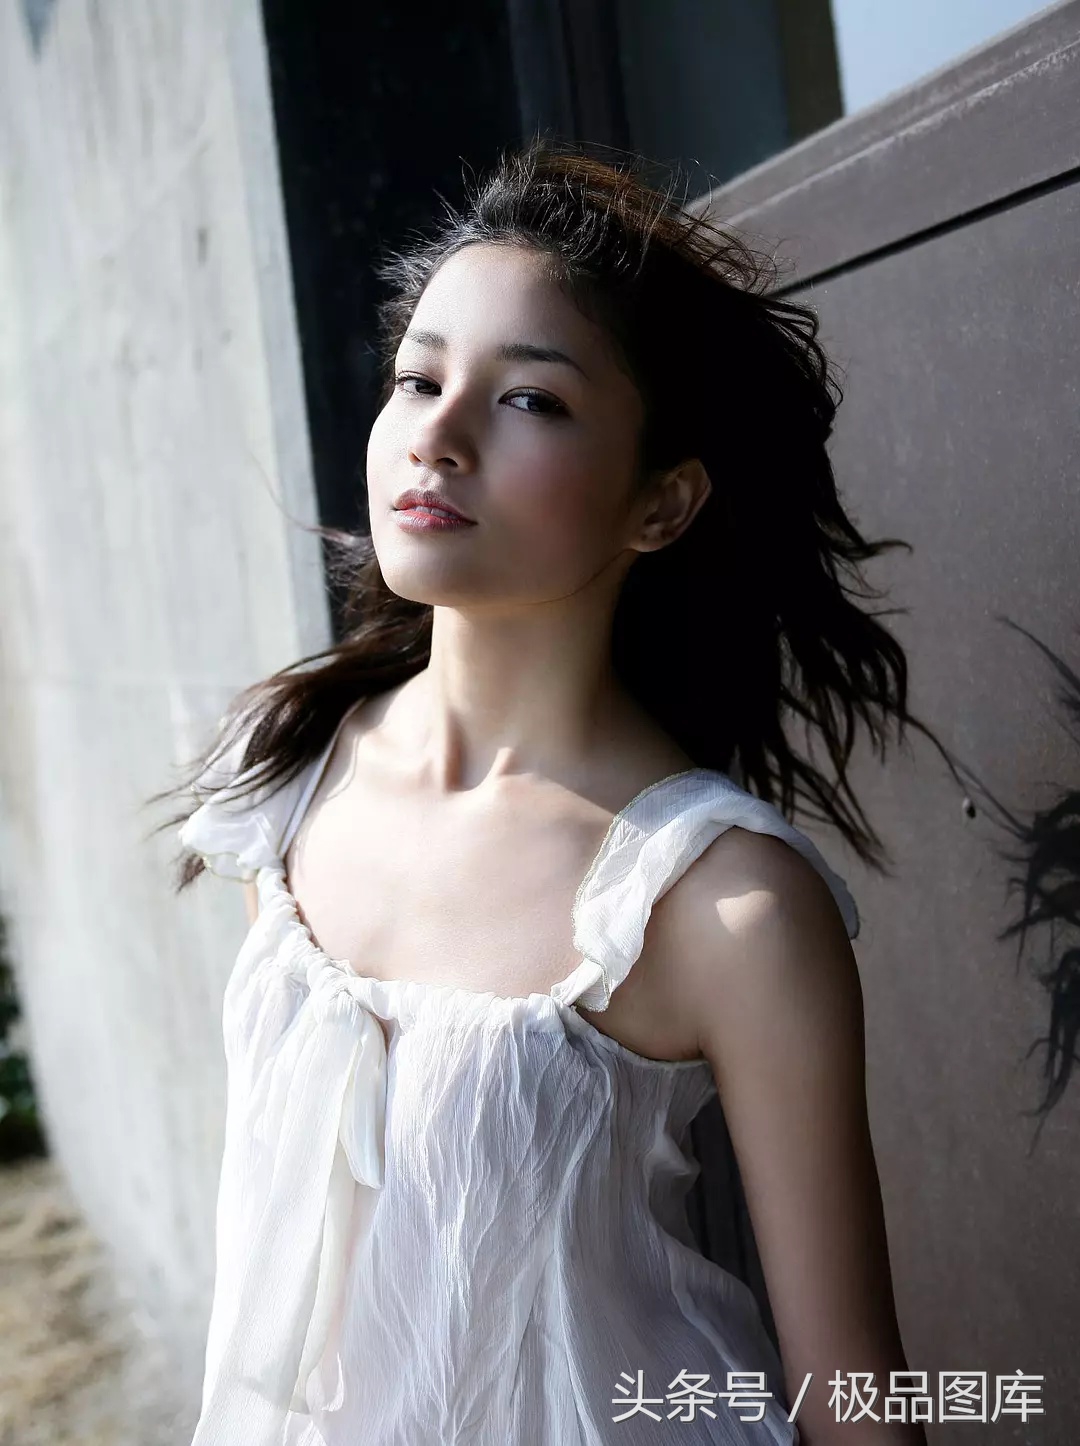 黑木明紗，1988年5月28日出生于日本沖繩縣，日本女演員、模特/ 作者: / 來源: